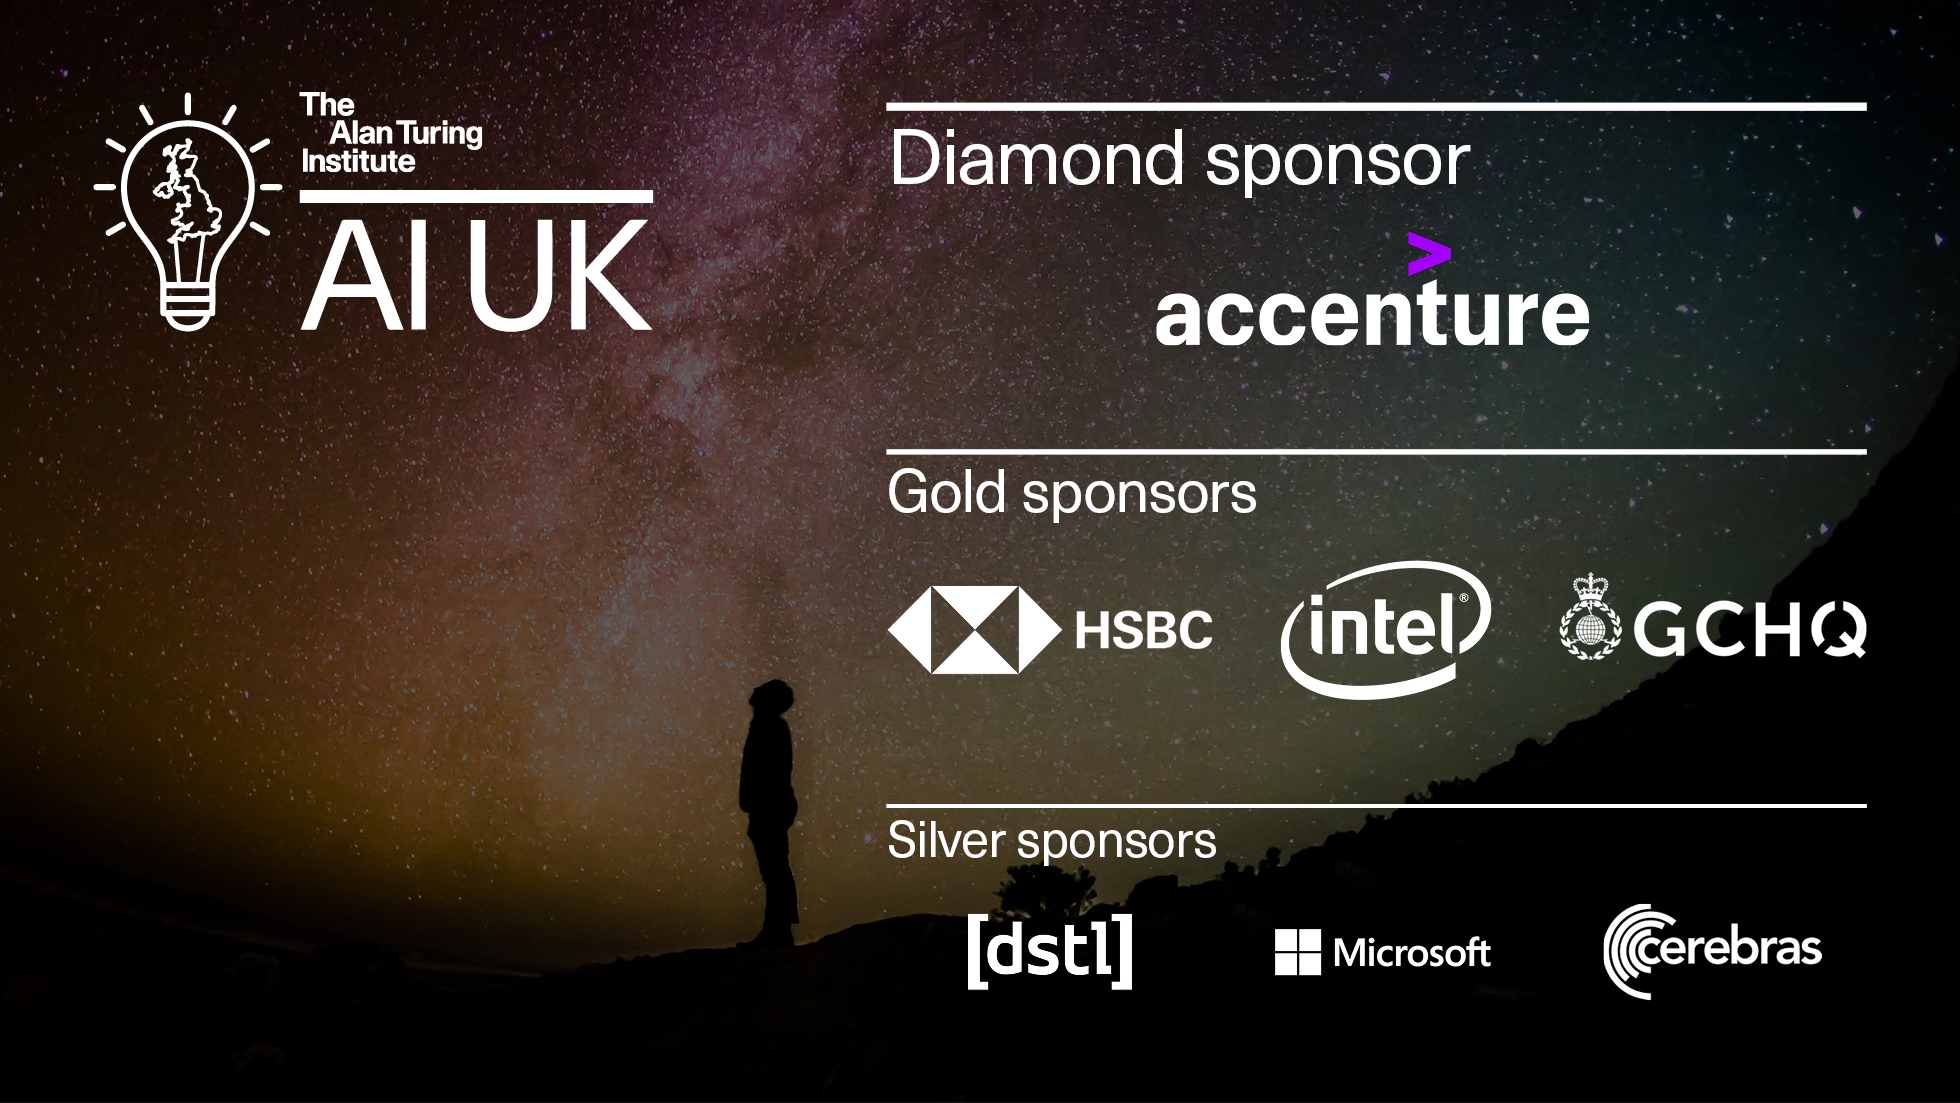 AI UK sponsors